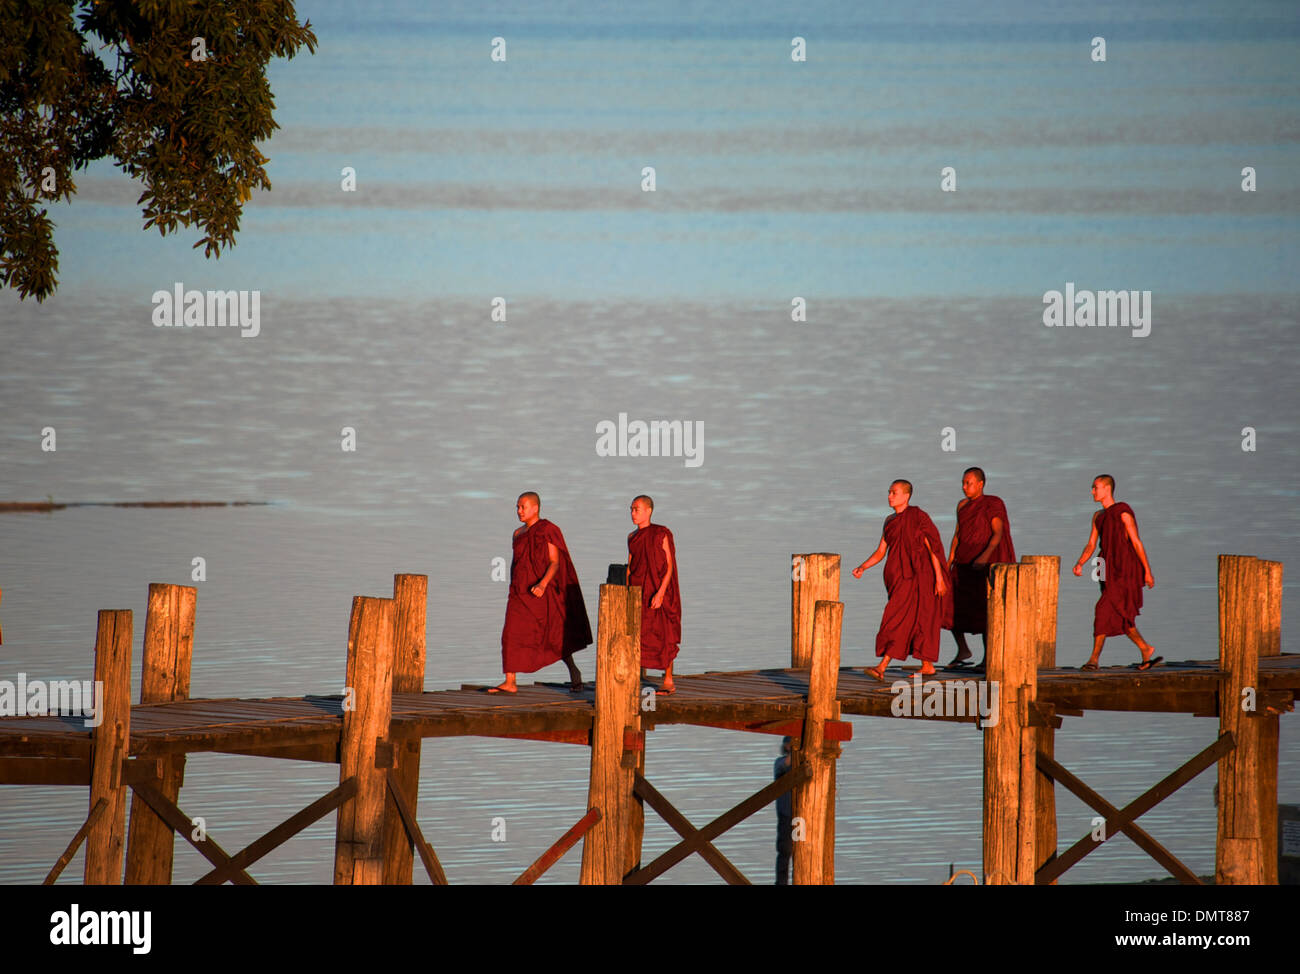 Buddhistische Mönche U Bein Brücke auf dem Weg zu ihr Kloster, Amarapura. verlassene Stadt, Mandalay, Myanmar (Burma). Stockfoto